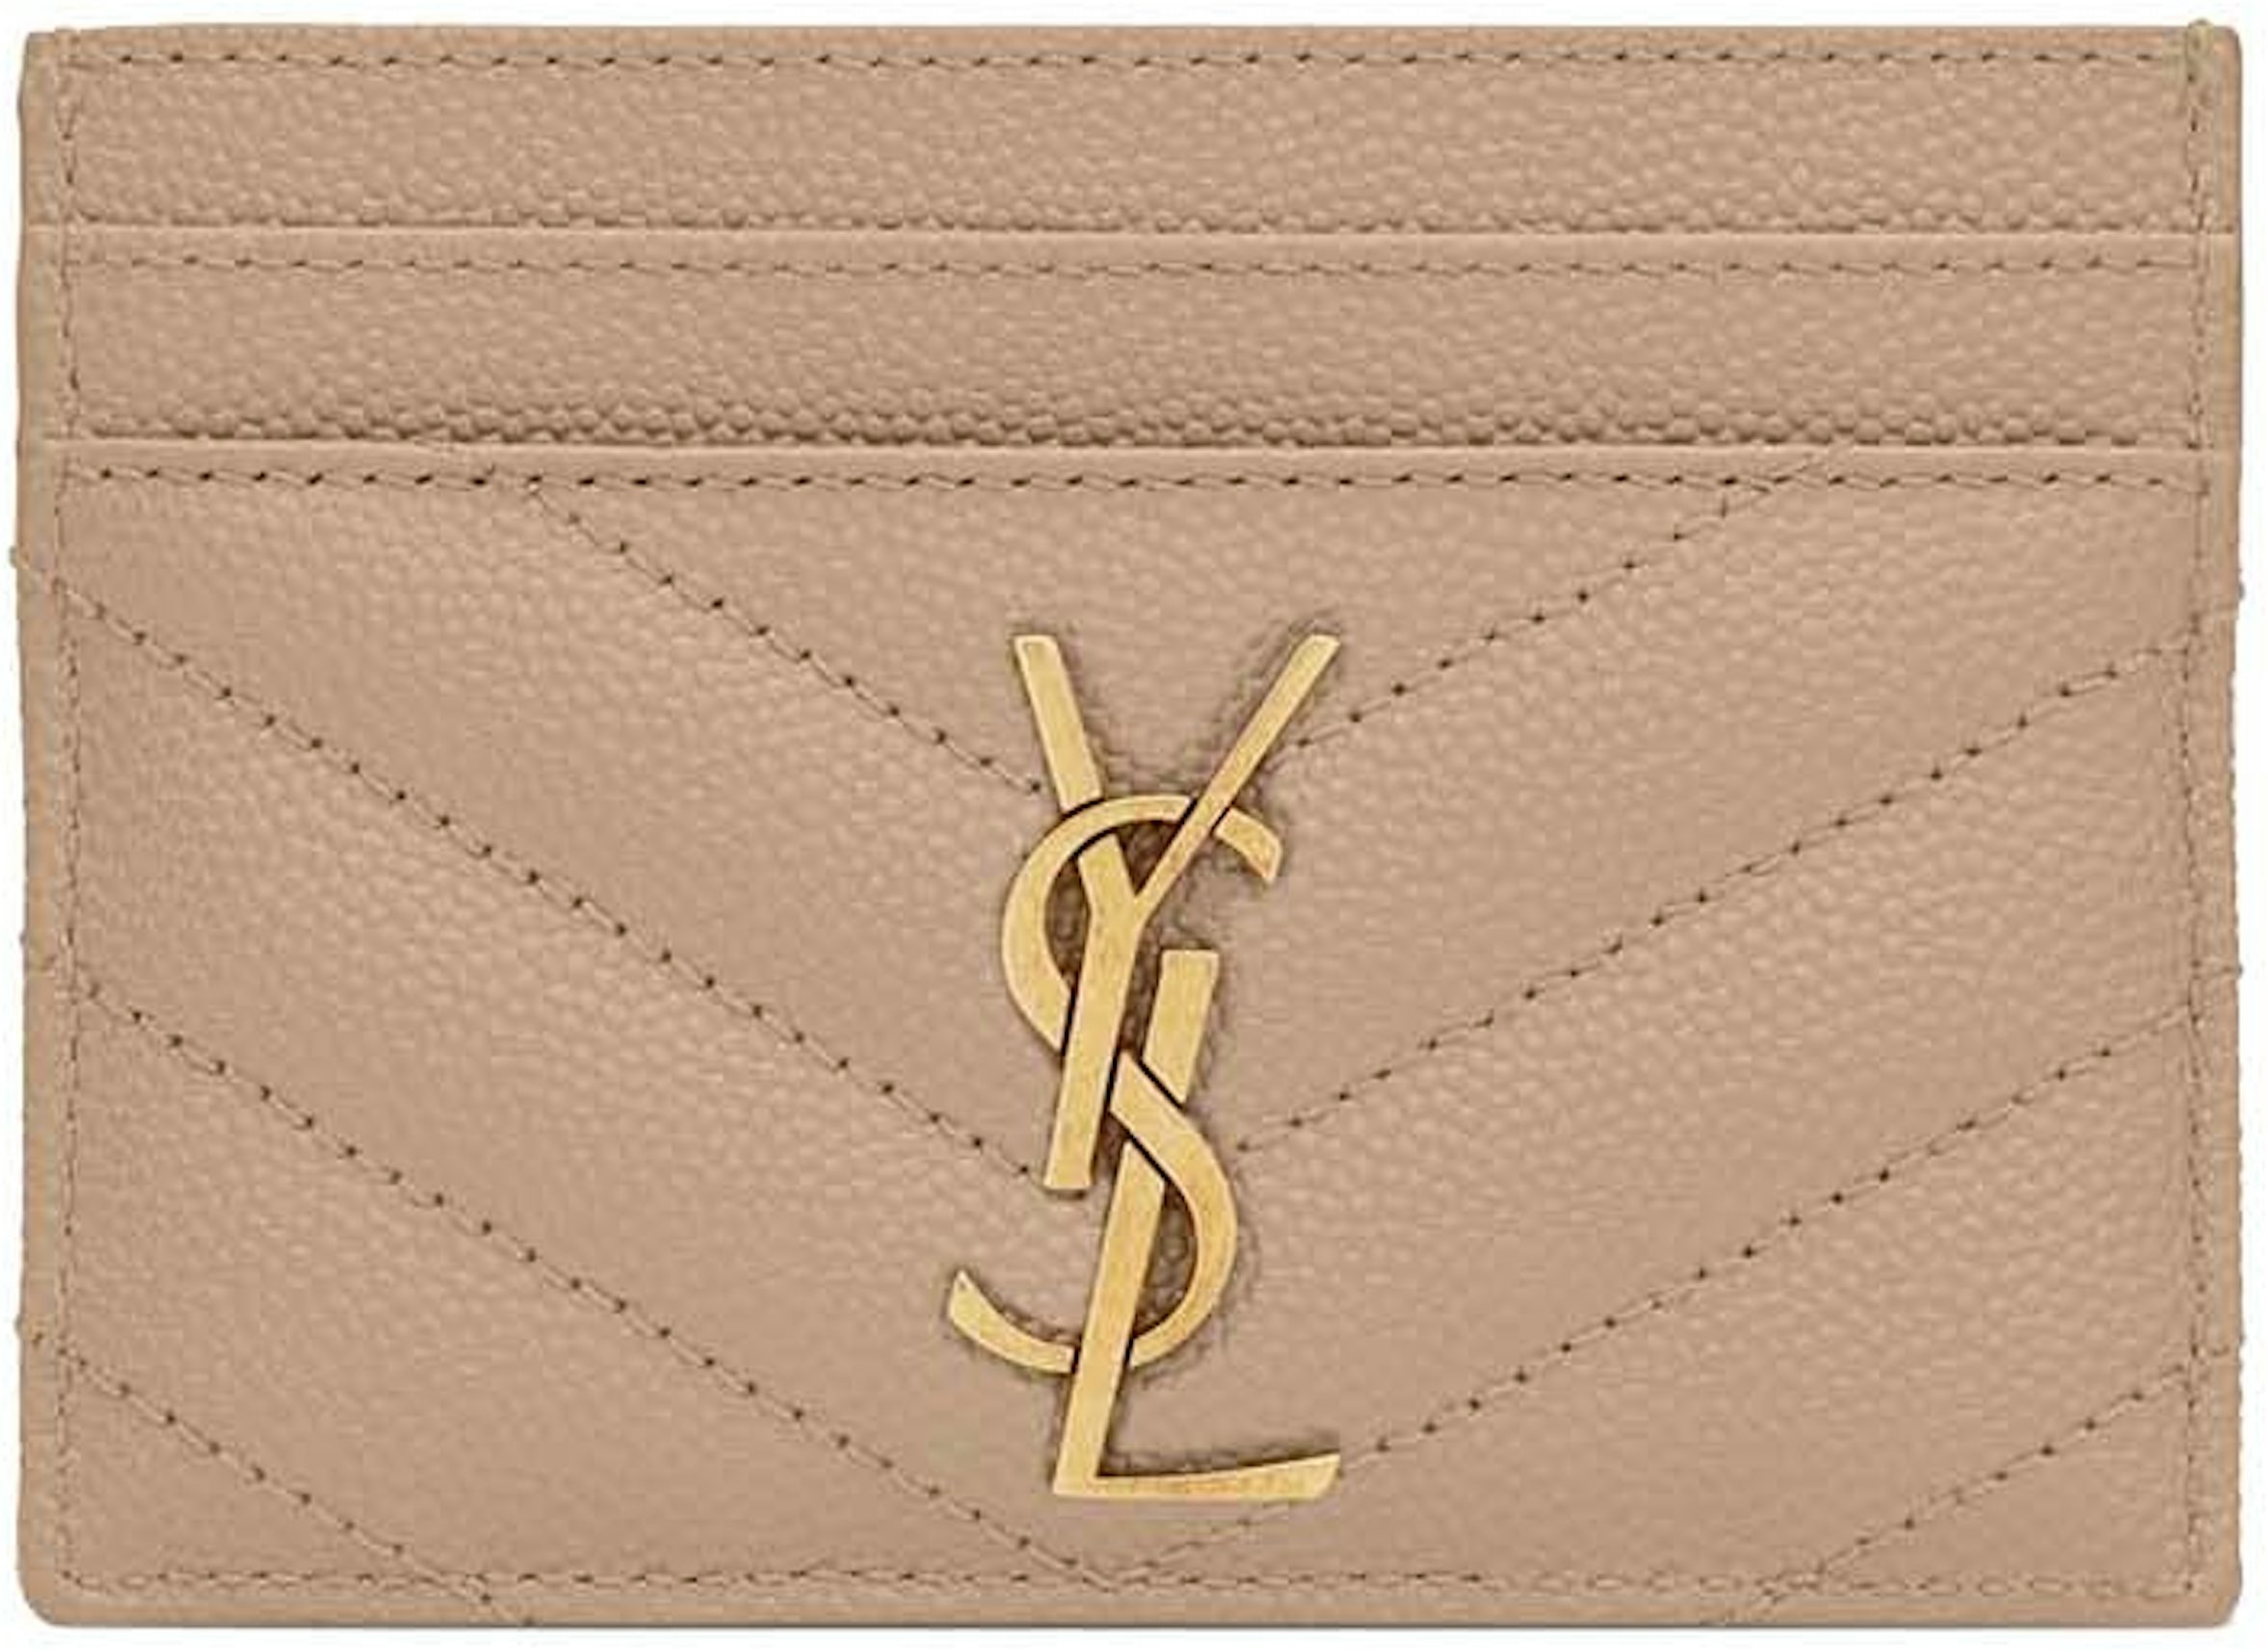 CASSANDRE MATELASSÉ chain wallet in grain de poudre embossed leather, Saint  Laurent